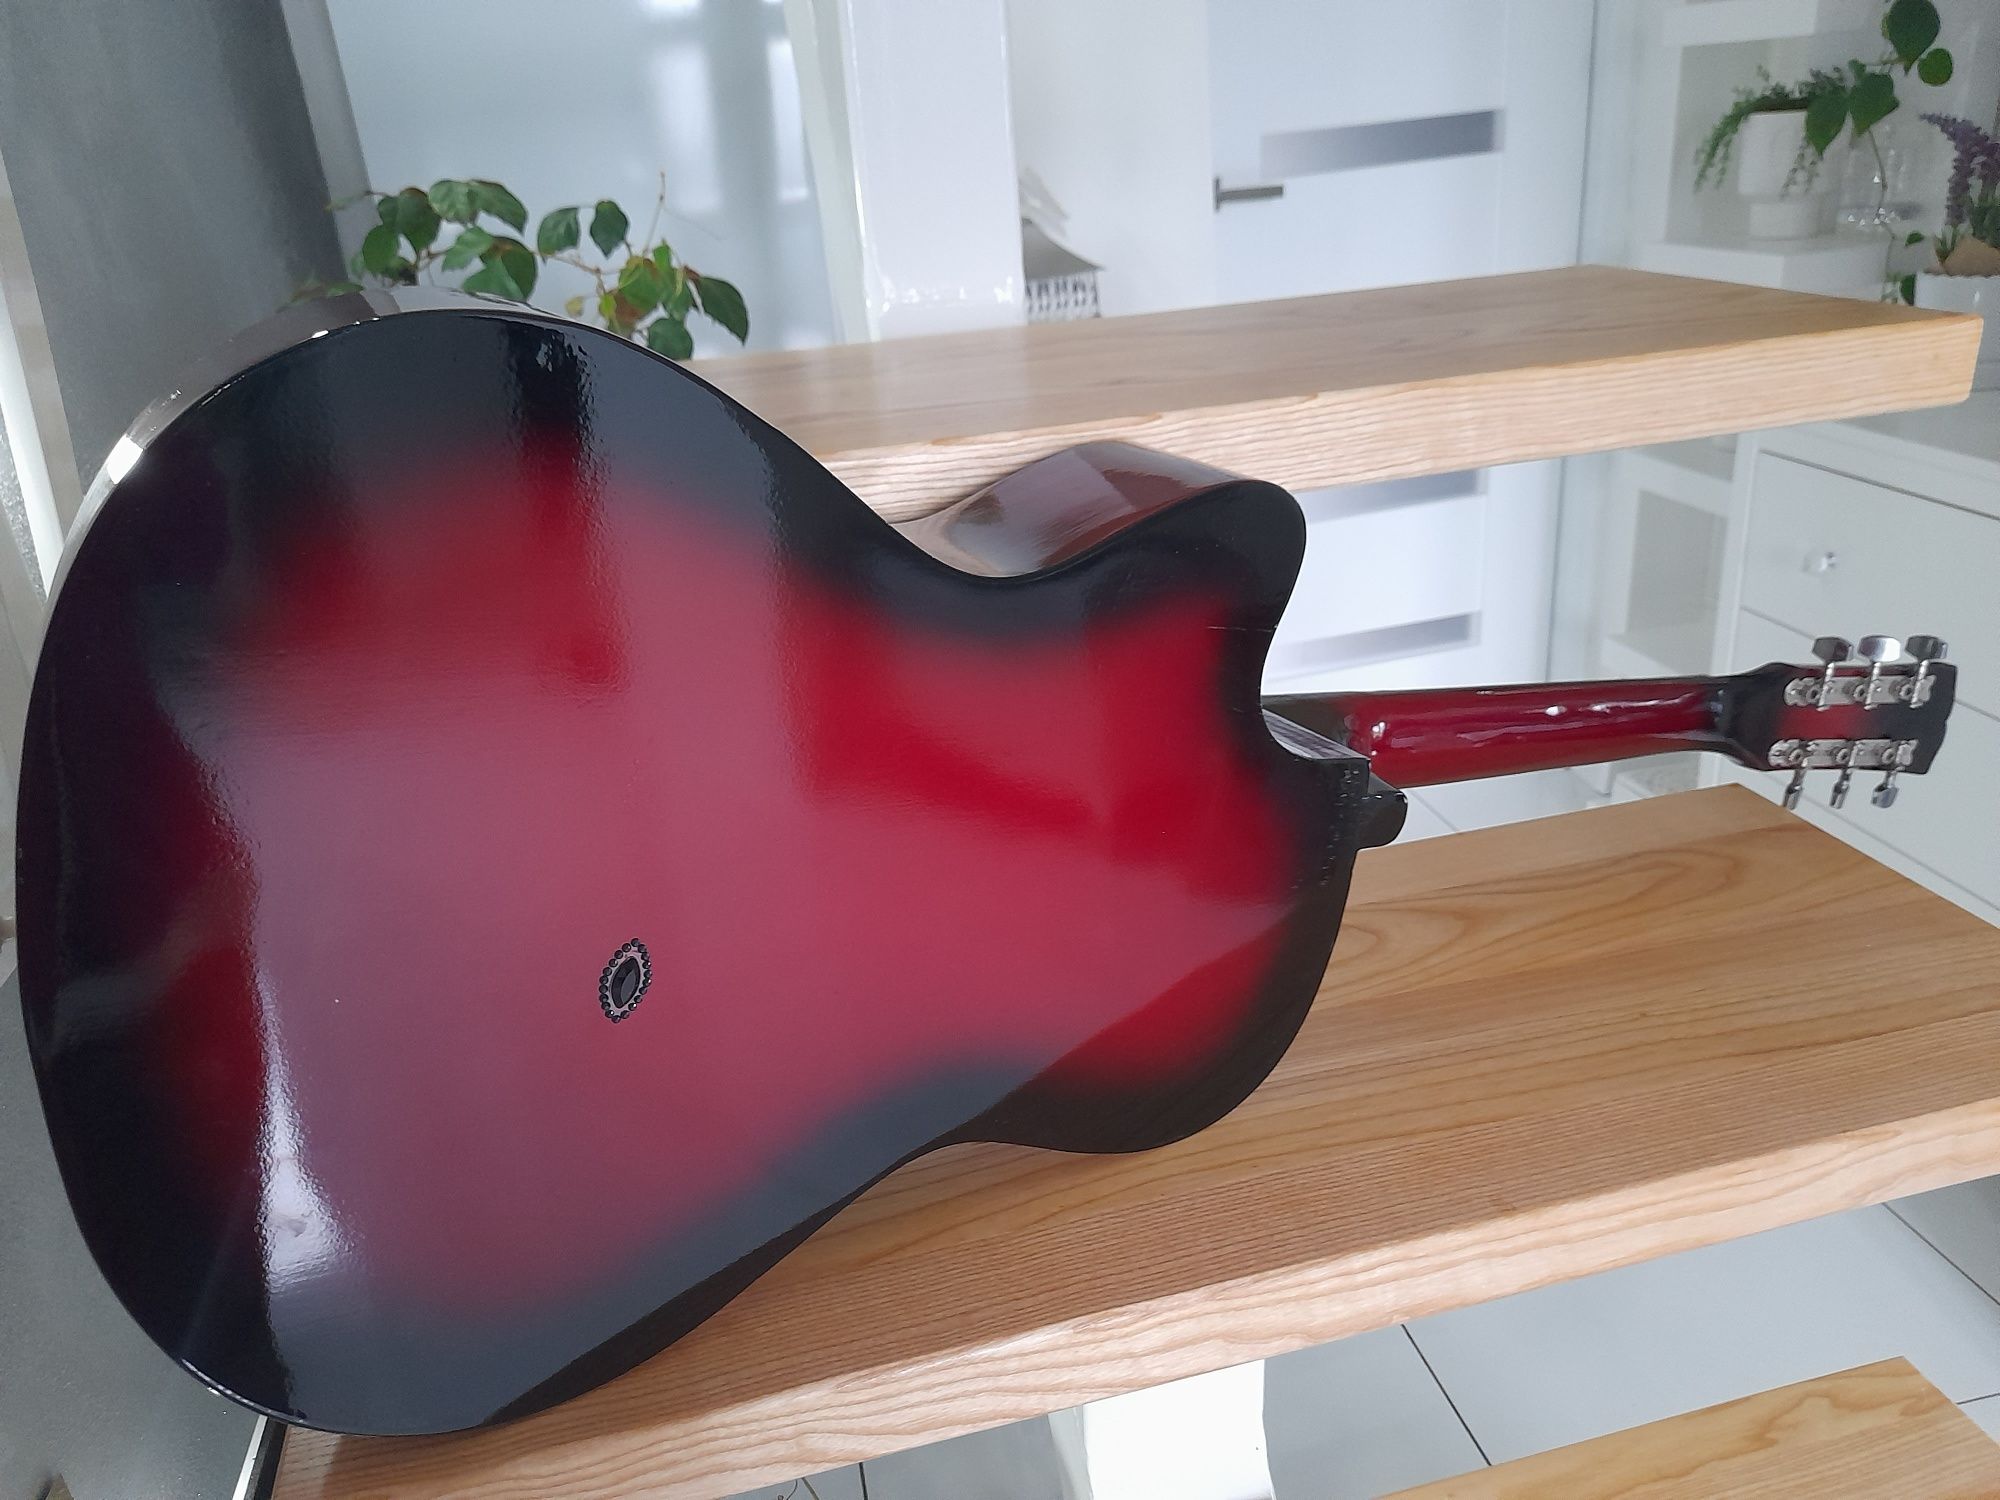 Gitara akustyczna Castelo G3 rozmiar 4/4 czerwona połysk przepiękna